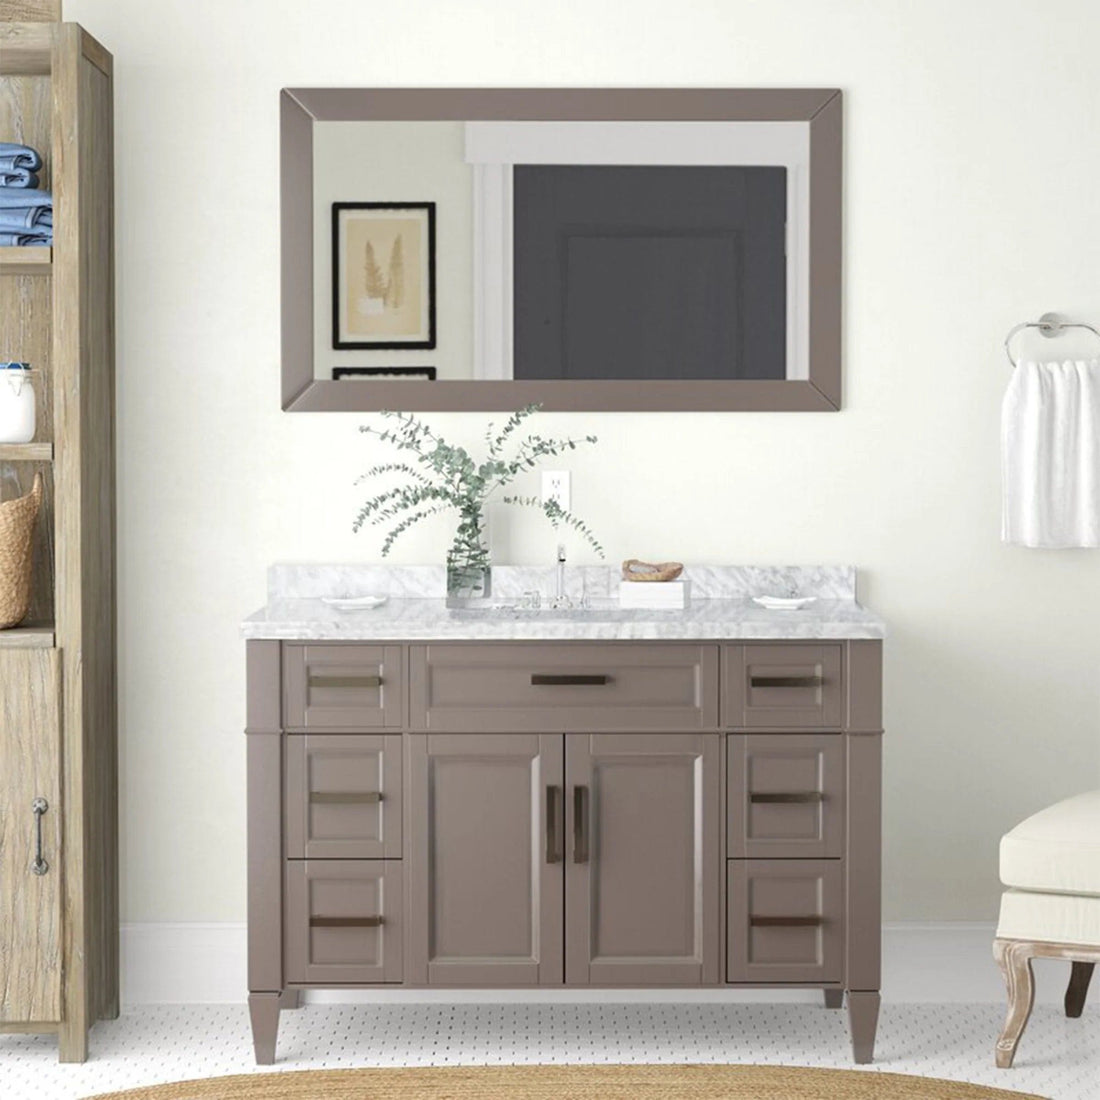 48 in. Single Sink Bathroom Vanity Set in Gray,Carrara Marble Stone Top - Decohub Home